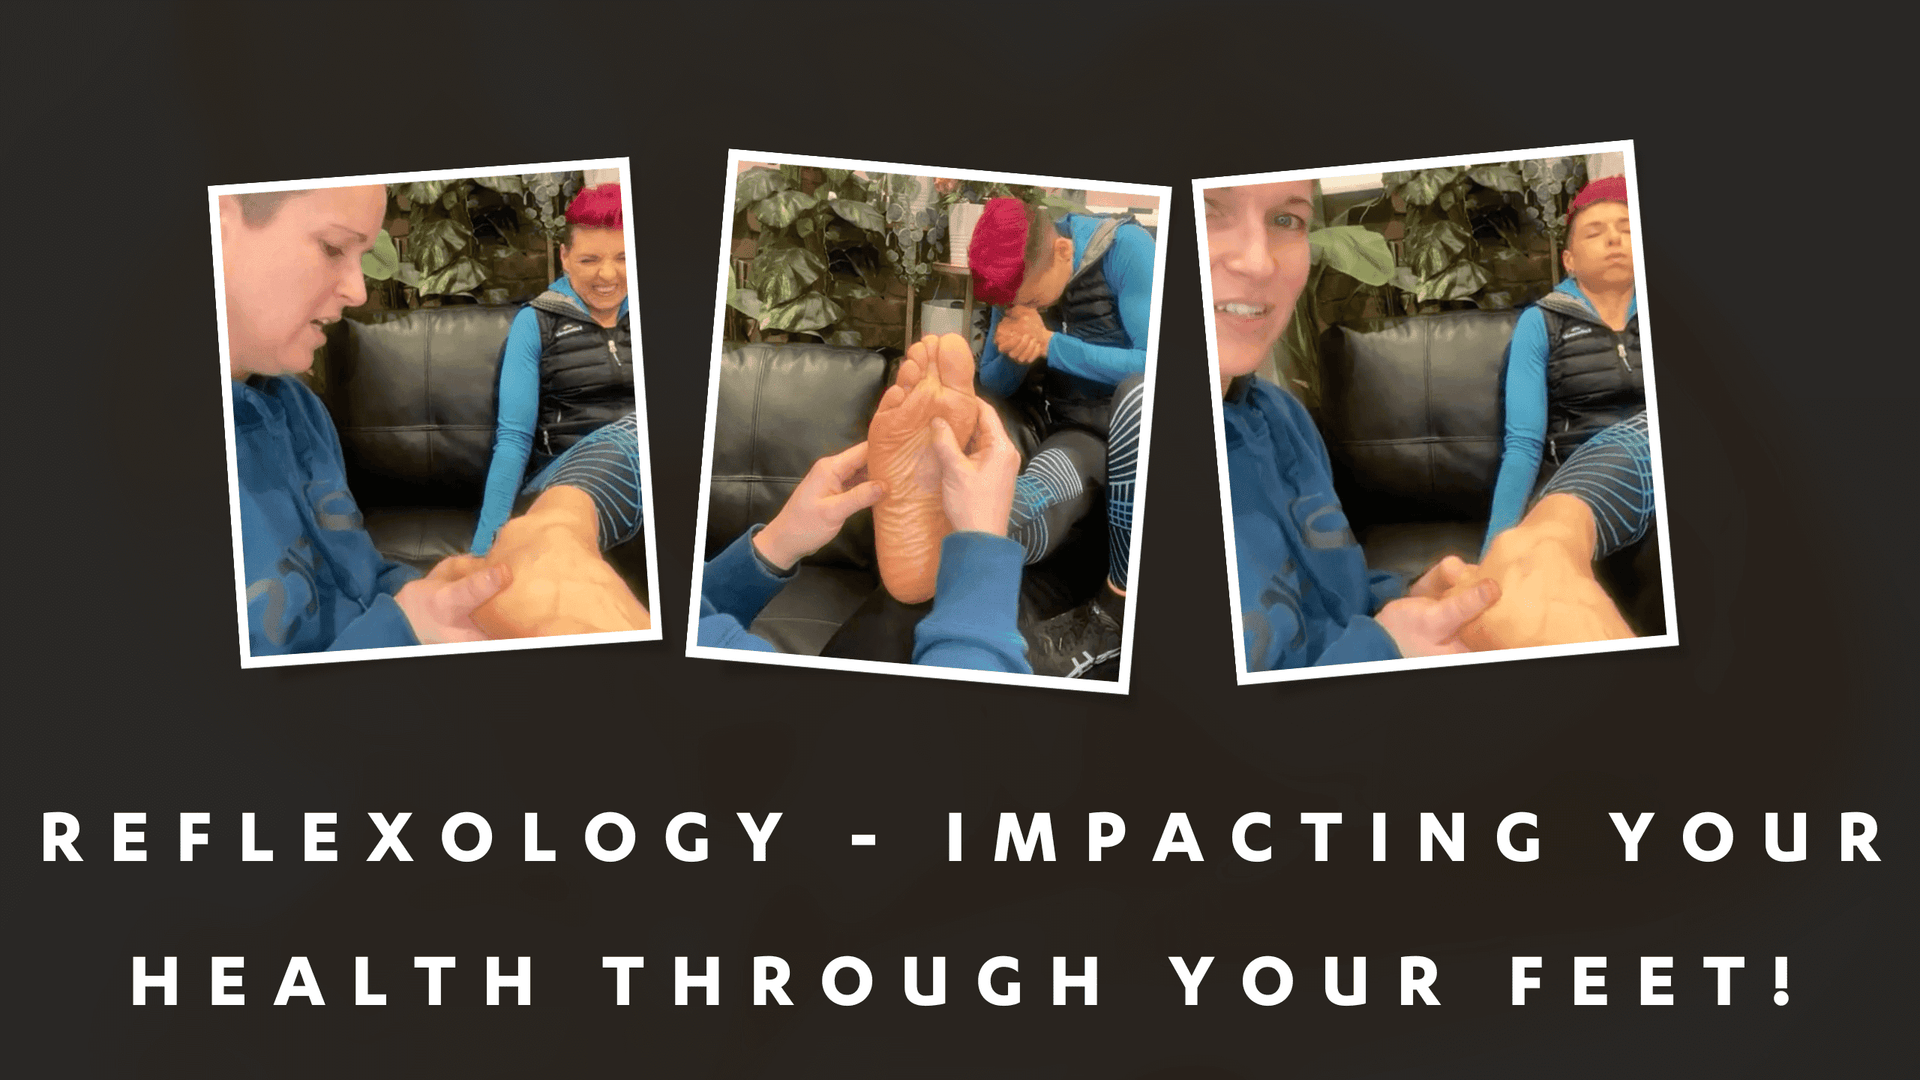 Dr Kez ChiroLab Feet Foot Reflexology massage health